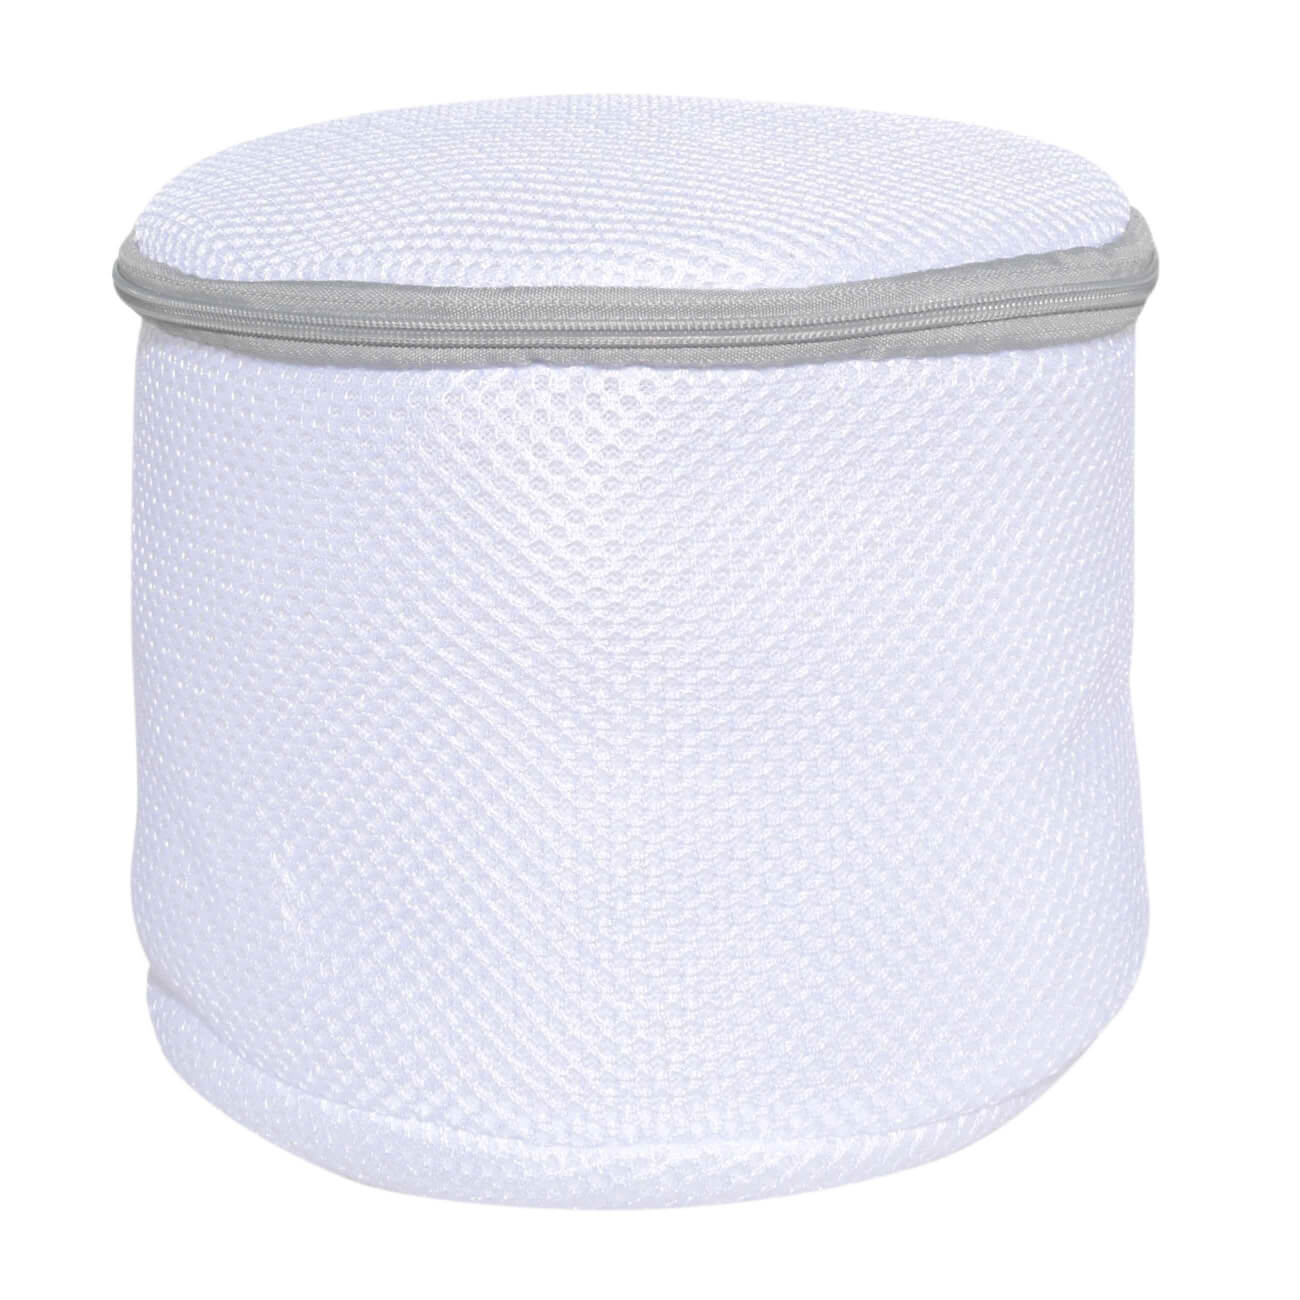 Мешок для стирки бюстгалтеров, 17х15 см, с защитой, полиэстер, бело-серый, Safety мешок для стирки одежды 40х50 см полиэстер бело серый safety plus